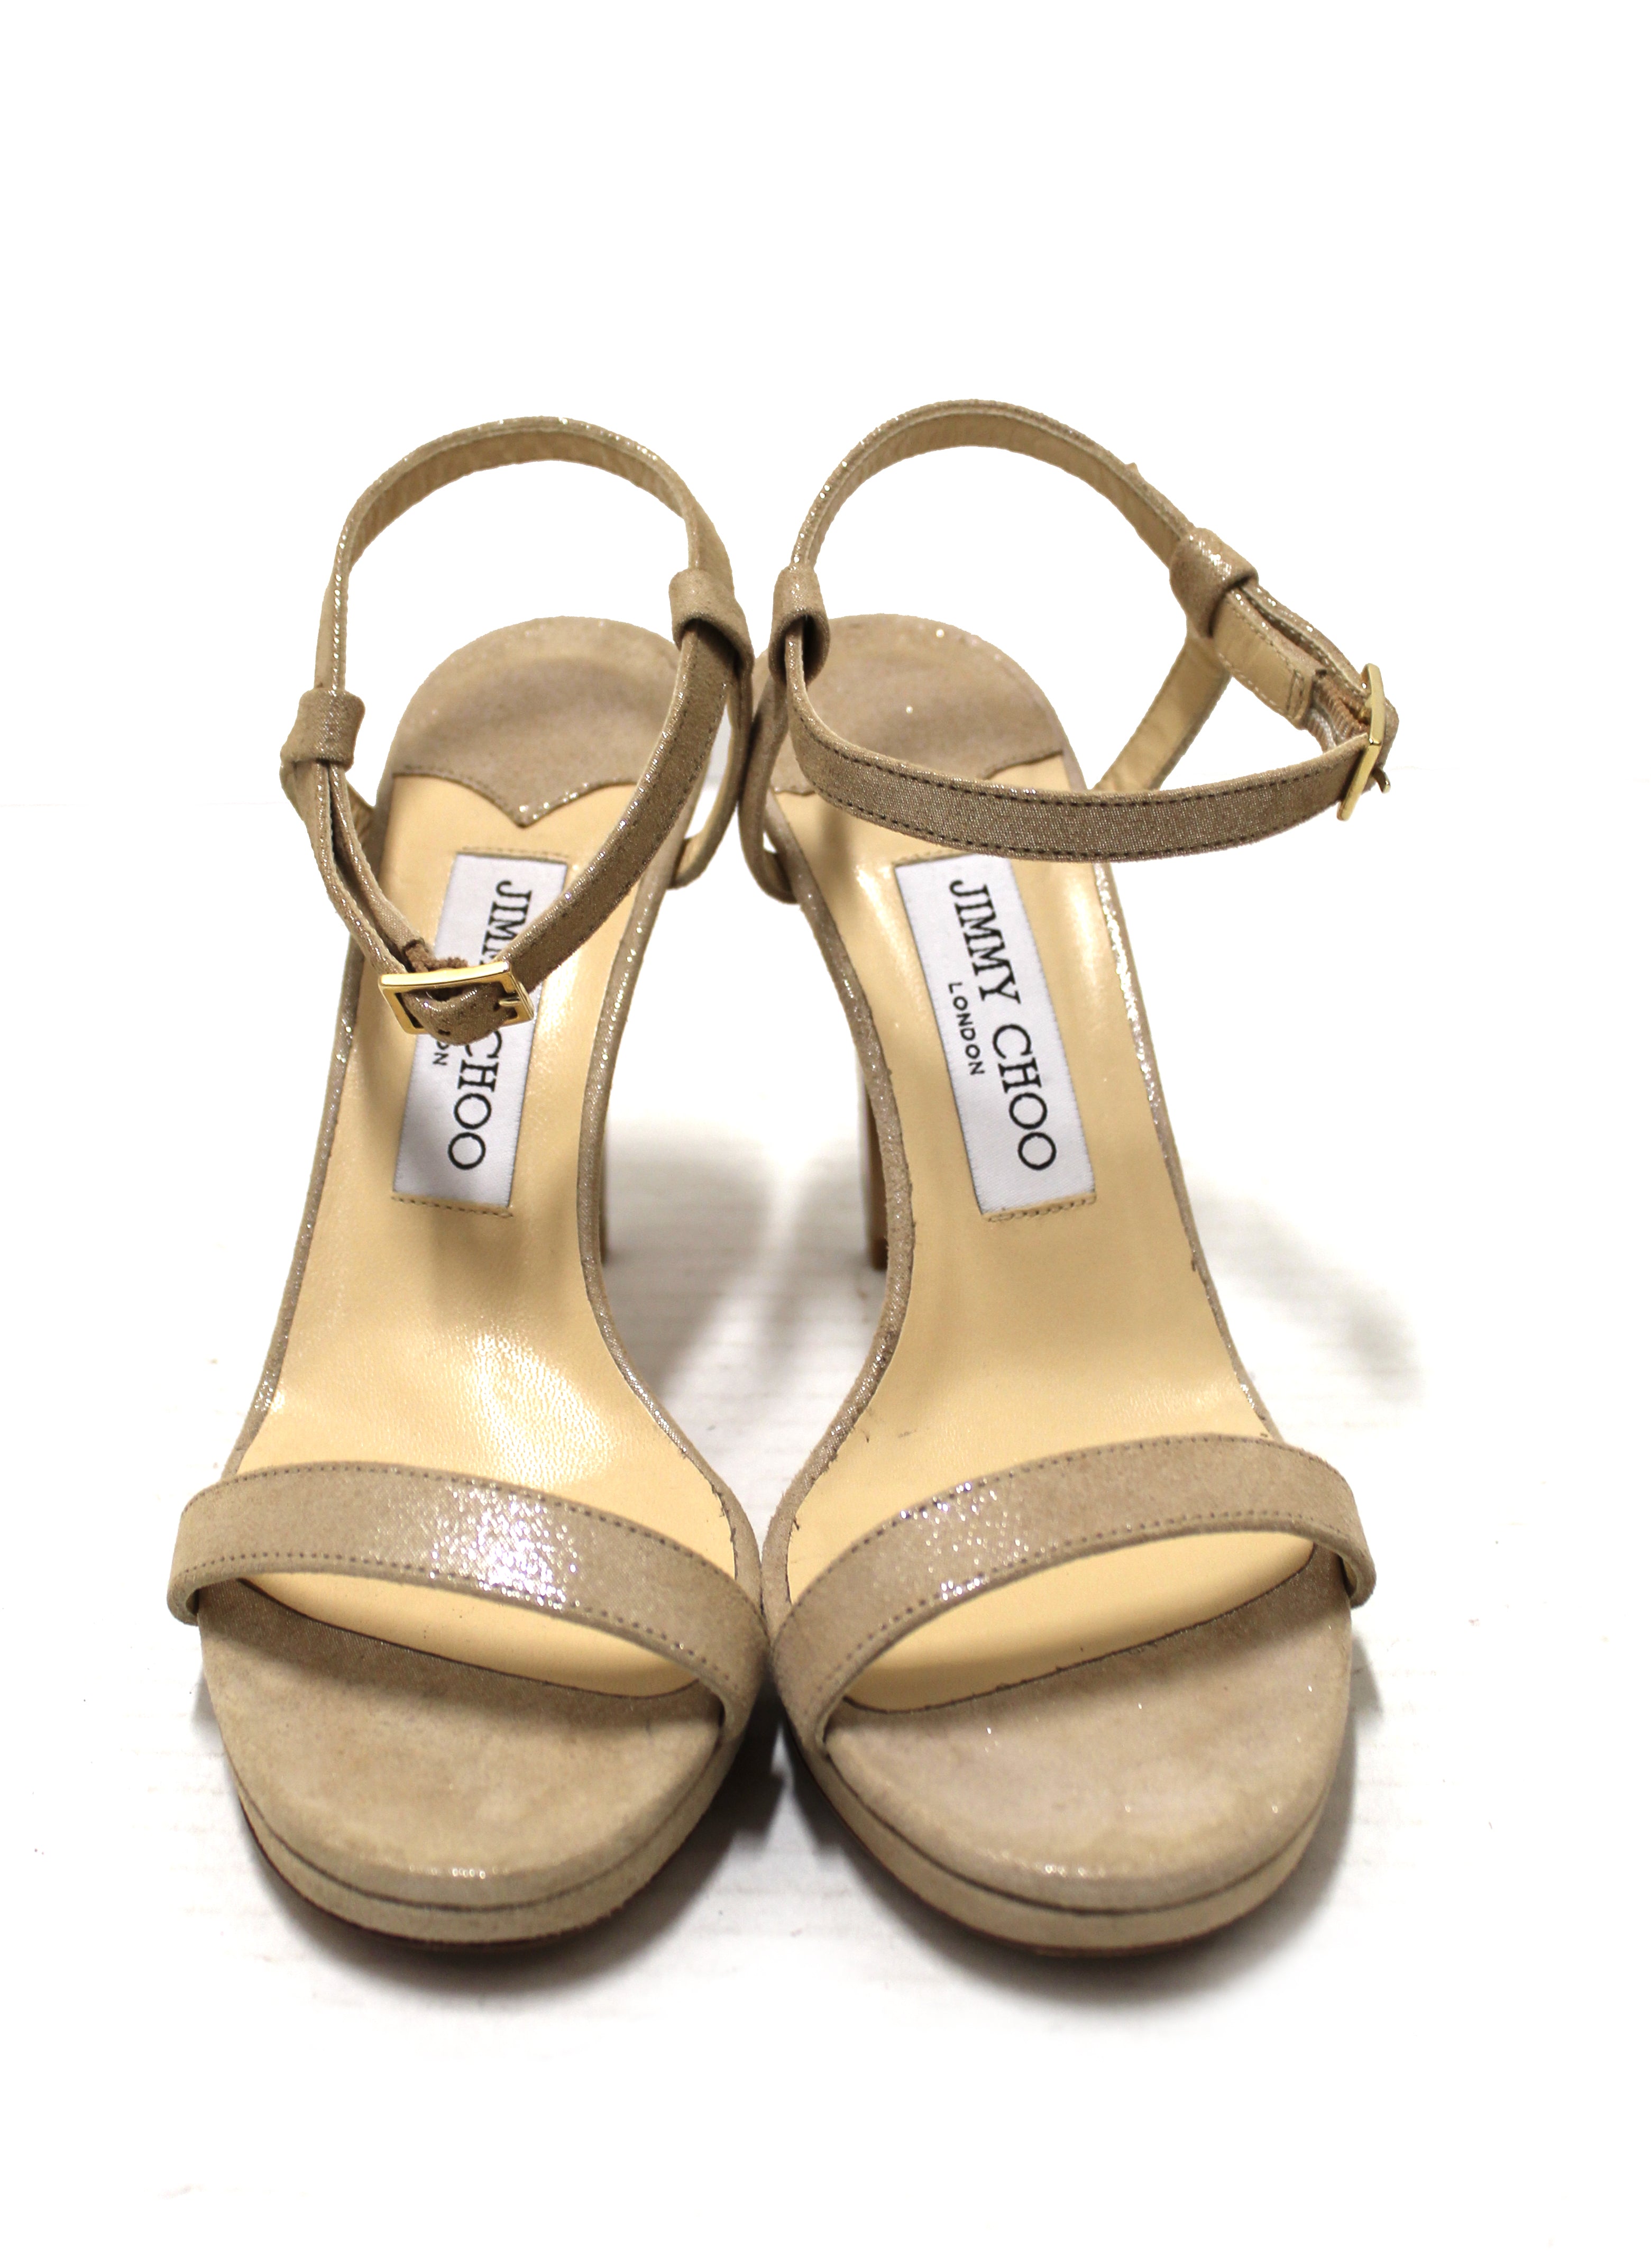 Gold Jimmy Choo Heels - Shoes